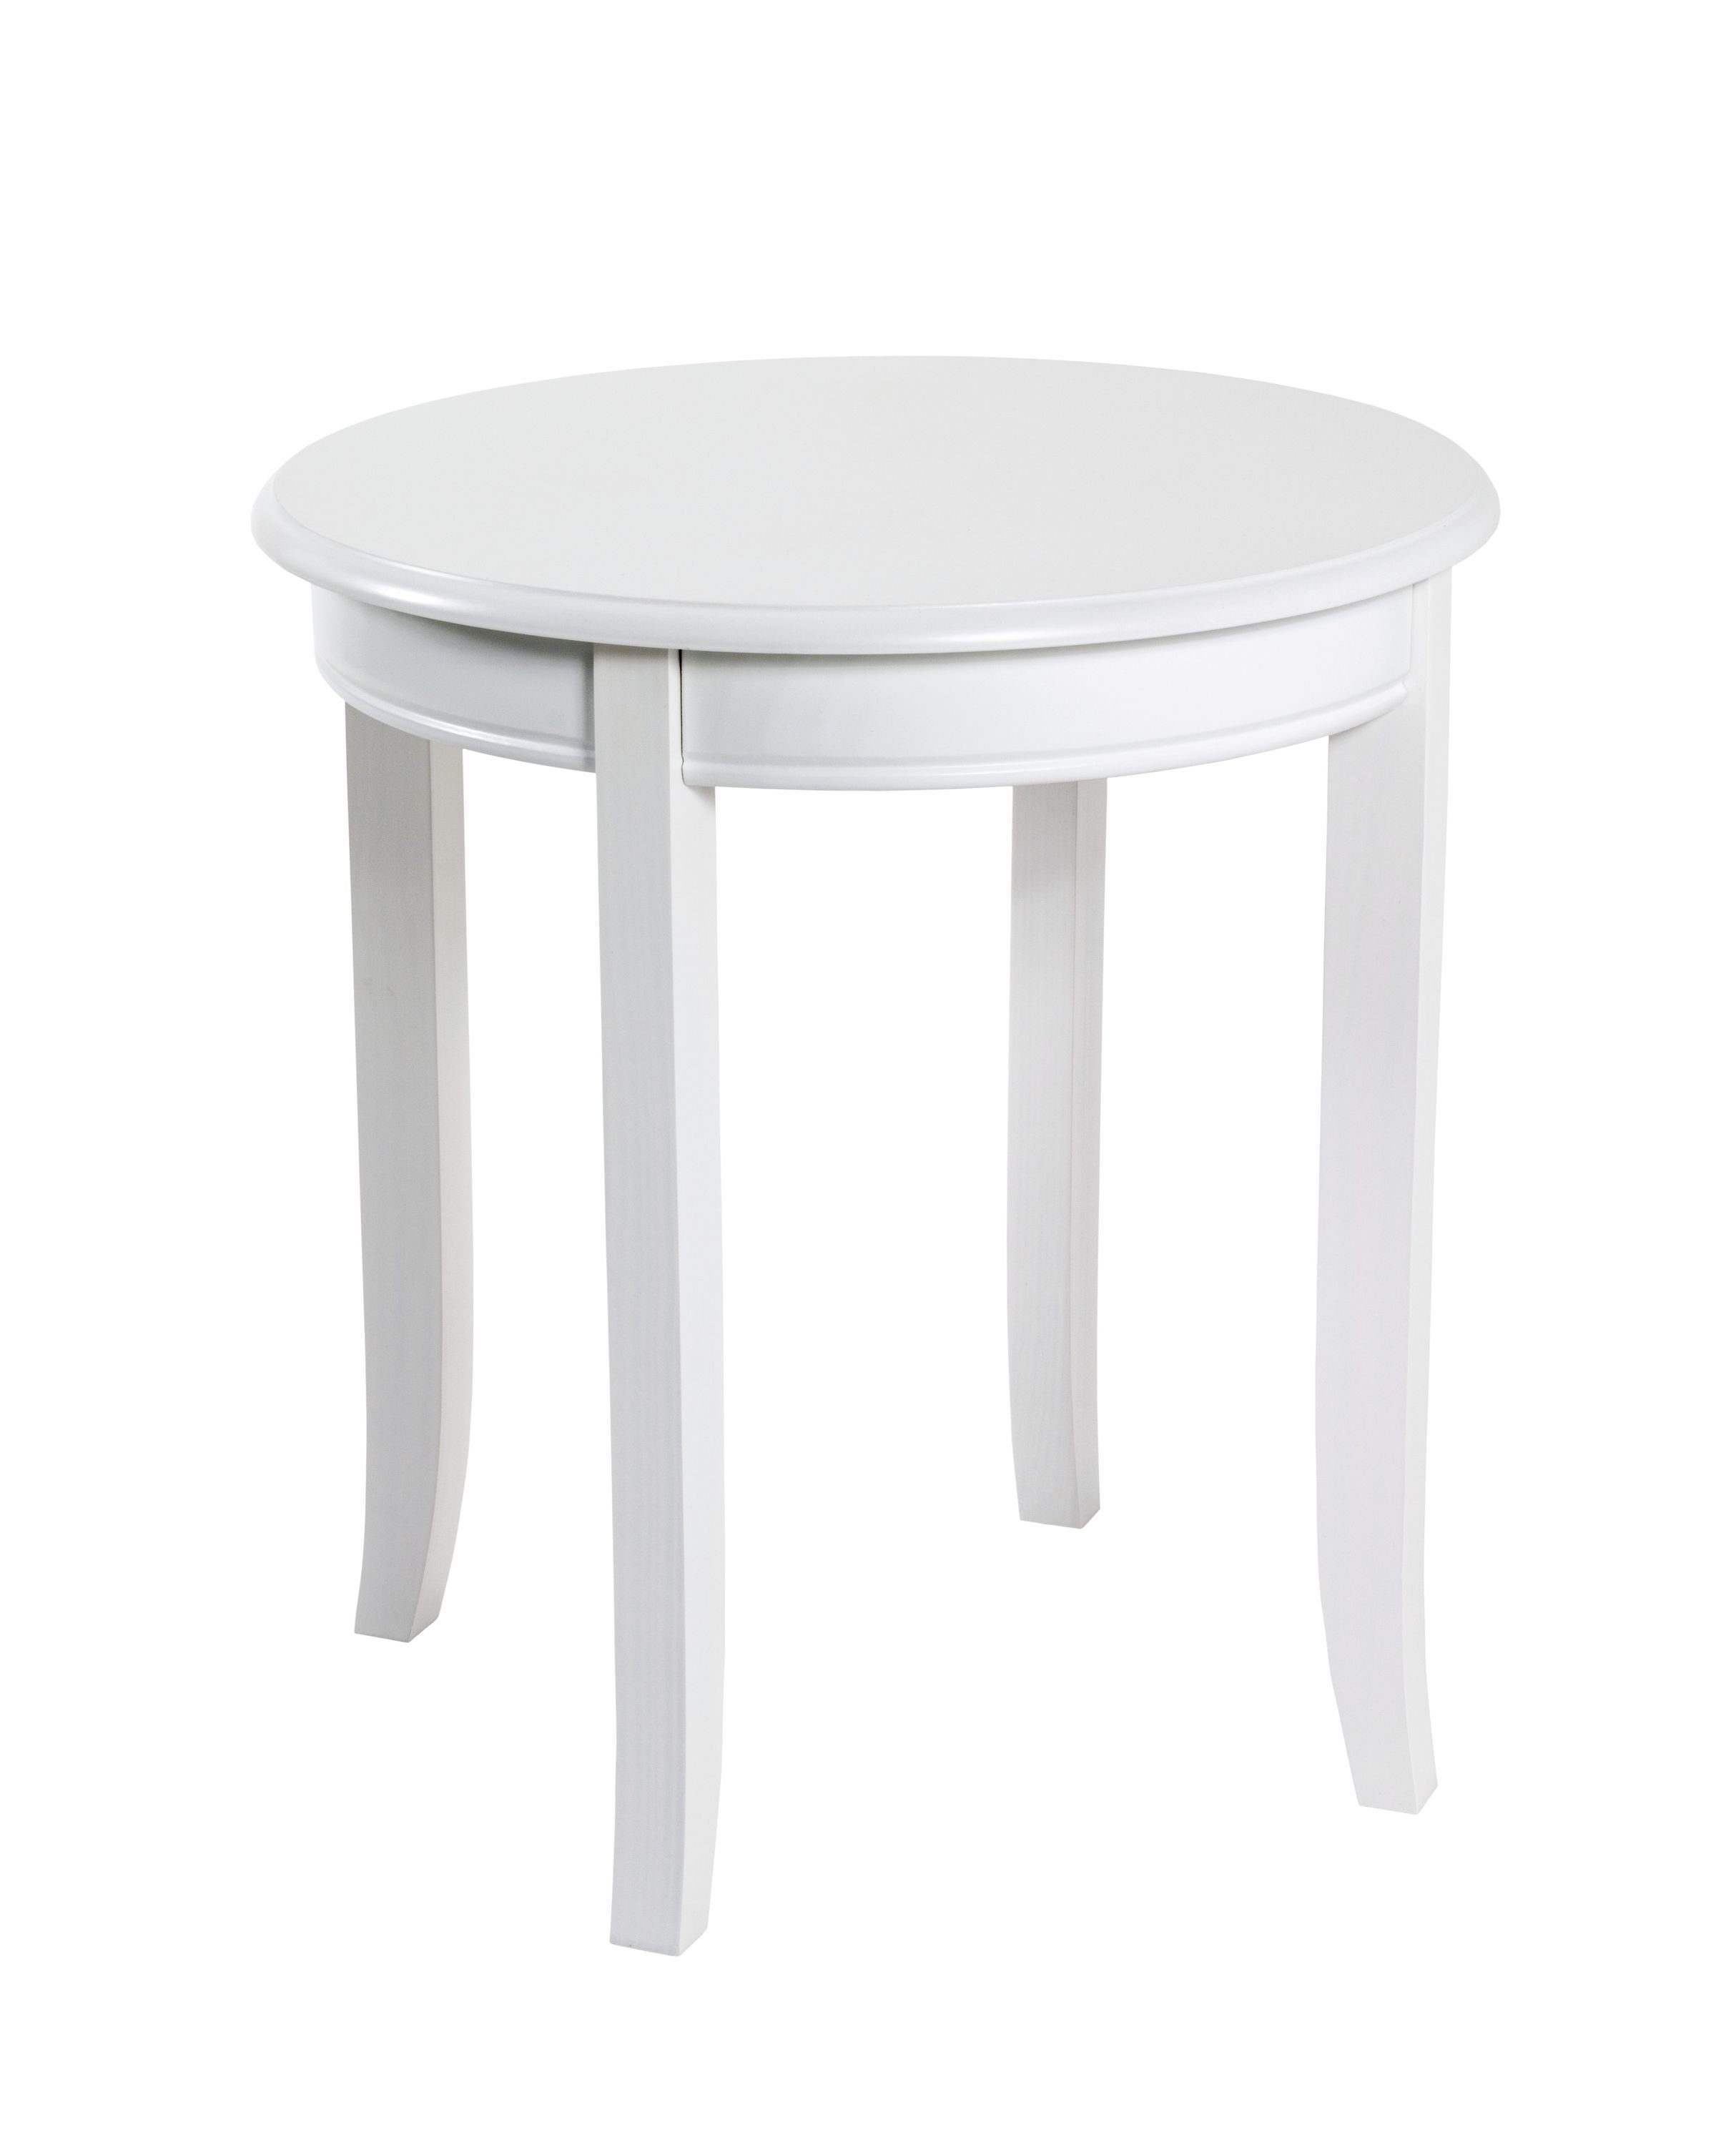 HAKU Beistelltisch Beistelltisch, HAKU Möbel Beistelltisch weiß (DH 48x51 cm) DH 48x51 cm weiß